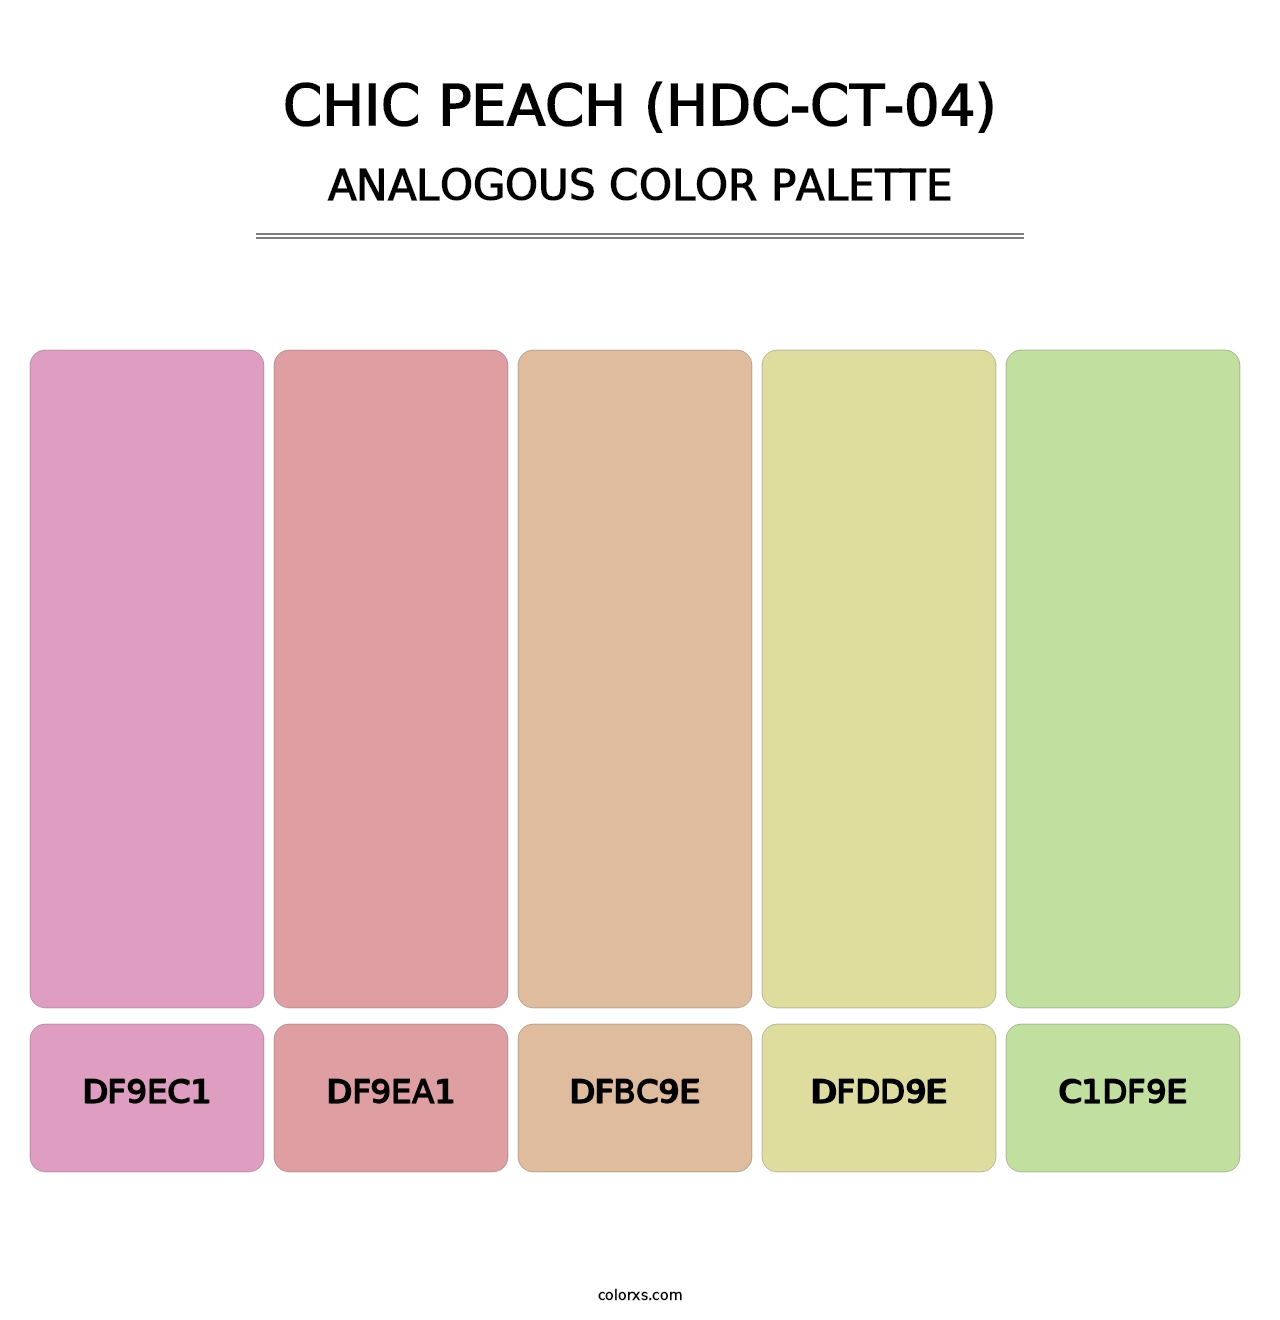 Chic Peach (HDC-CT-04) - Analogous Color Palette